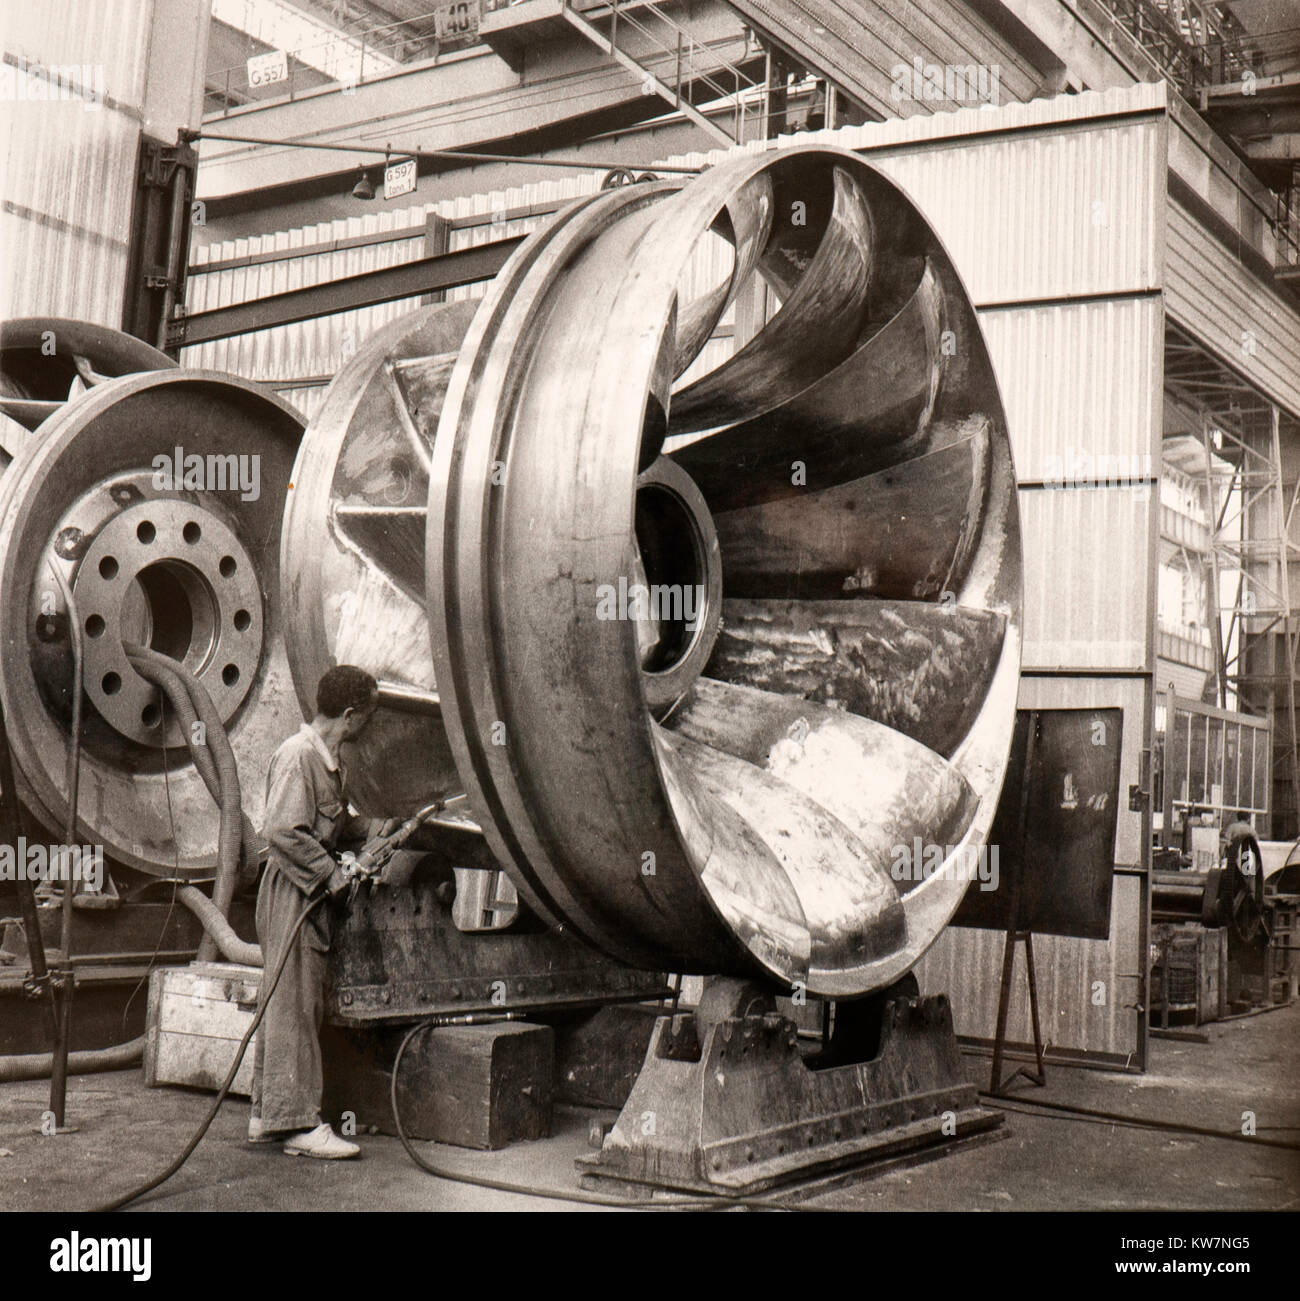 Turbine e macchinari pesanti prodotte da Franco Tosi industries (Legnano, Italia, 1960s) Foto Stock